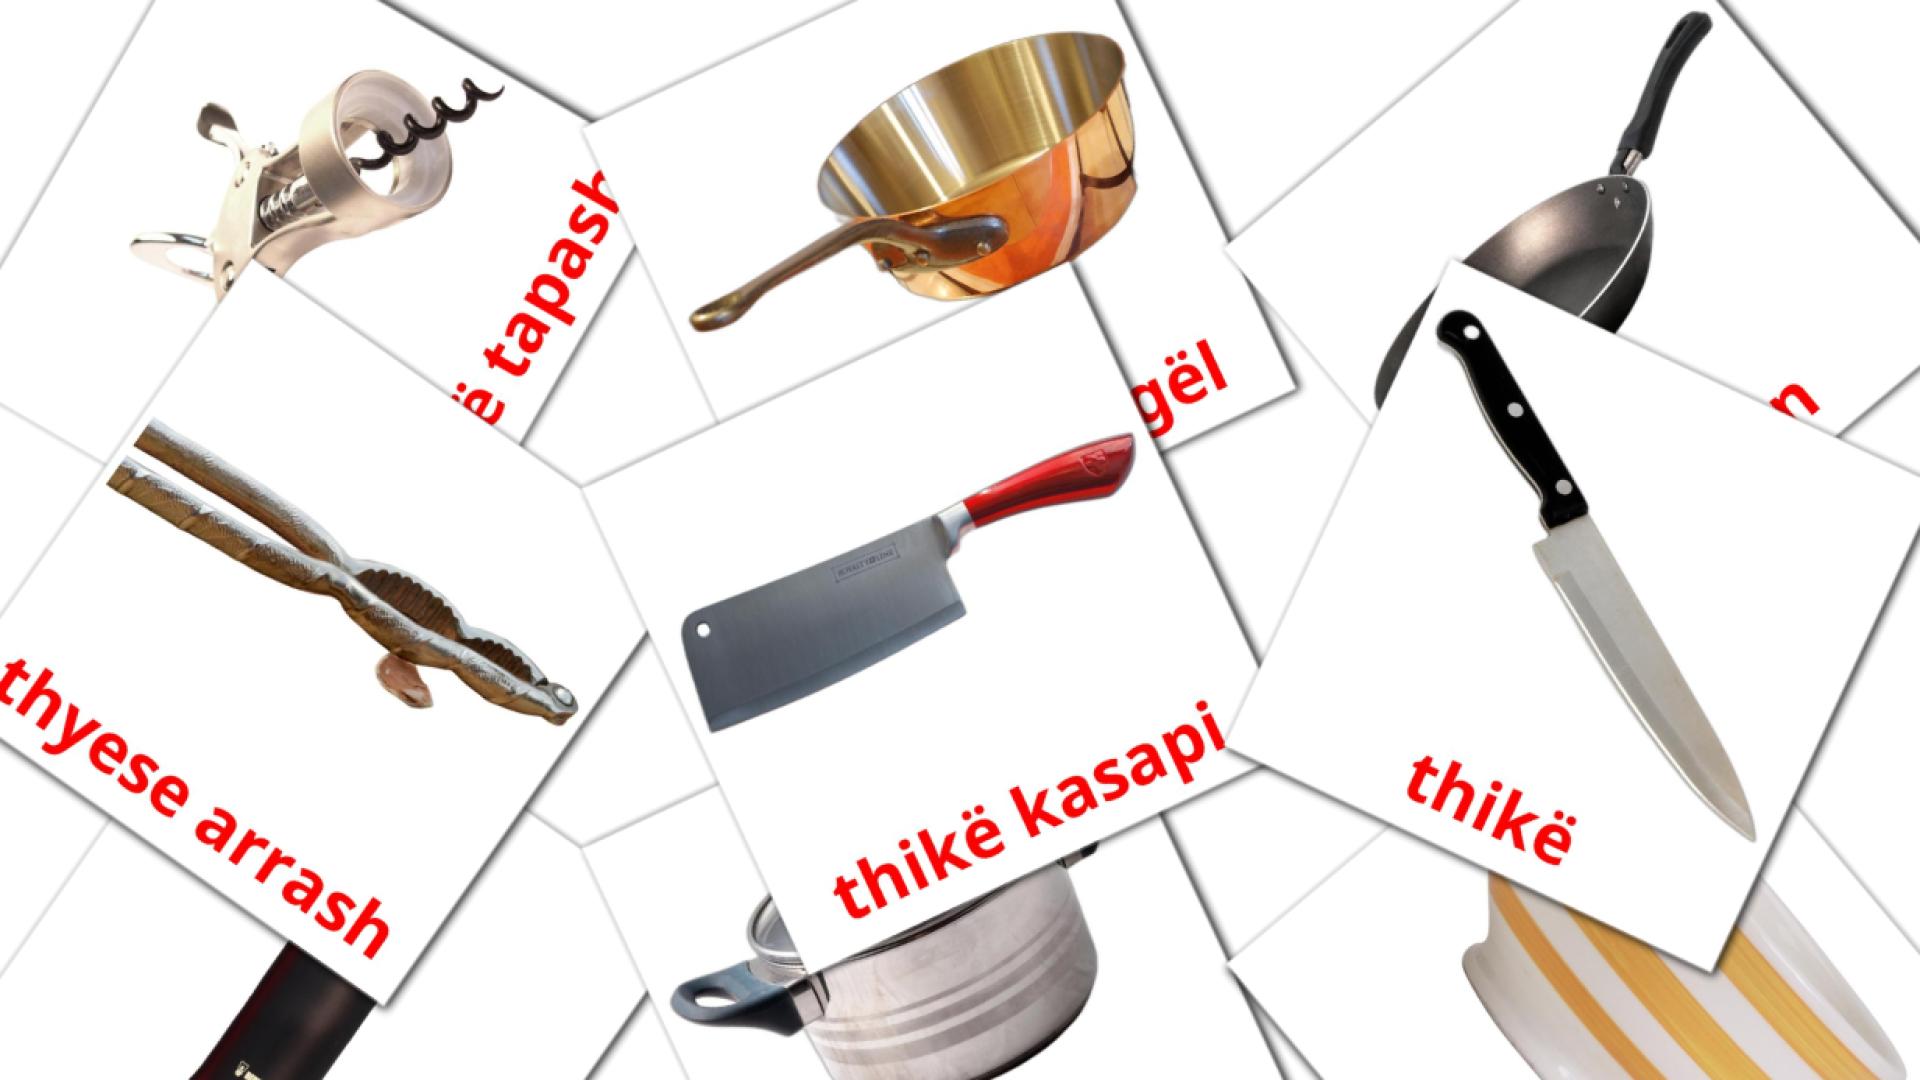 Kuzhina albanian vocabulary flashcards